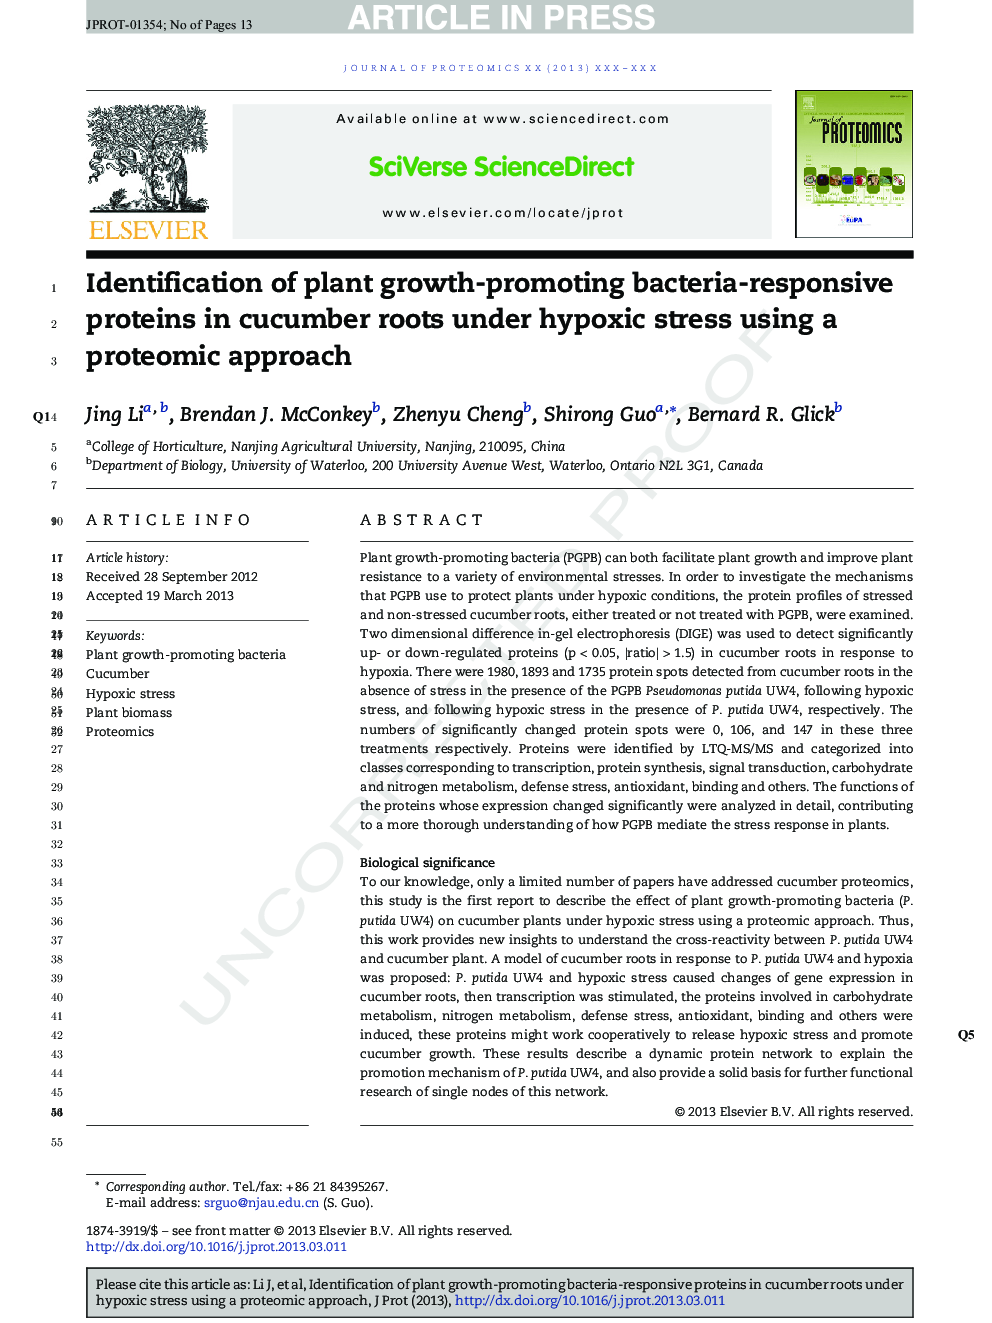 شناسایی پروتئین های باکتری مقاوم در برابر رشد گیاه در ریشه های خیار تحت تنش هیپوکی با استفاده از روش پروتئومیک 